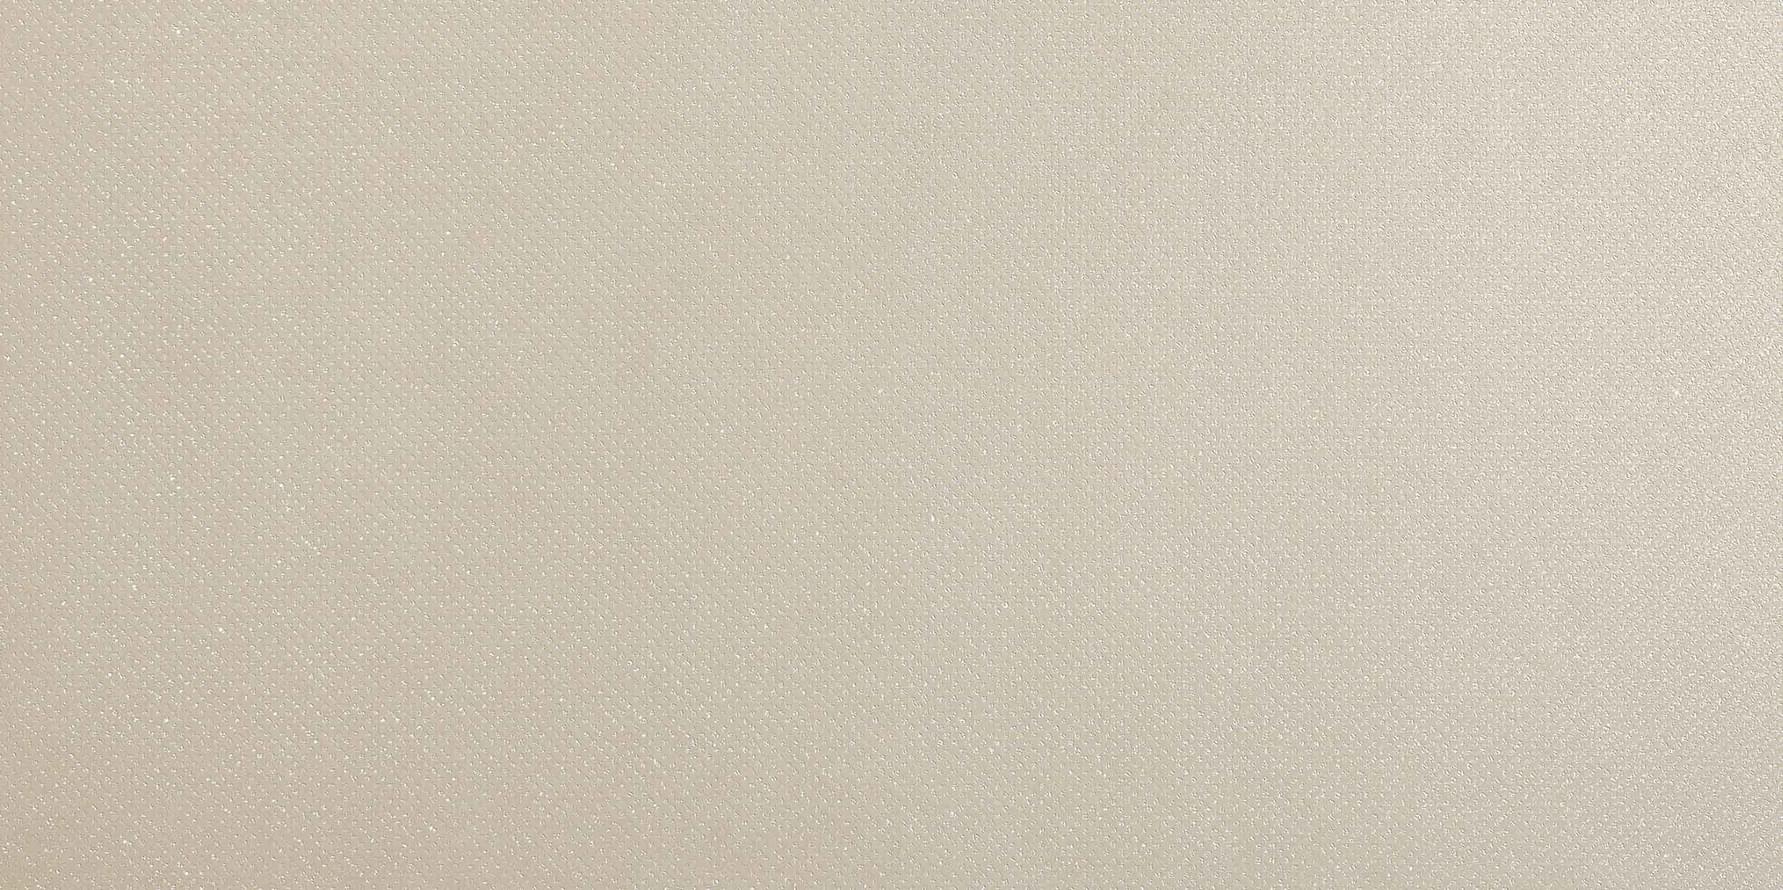 Bassanesi Luci Di Venezia Cristallo White 60x120